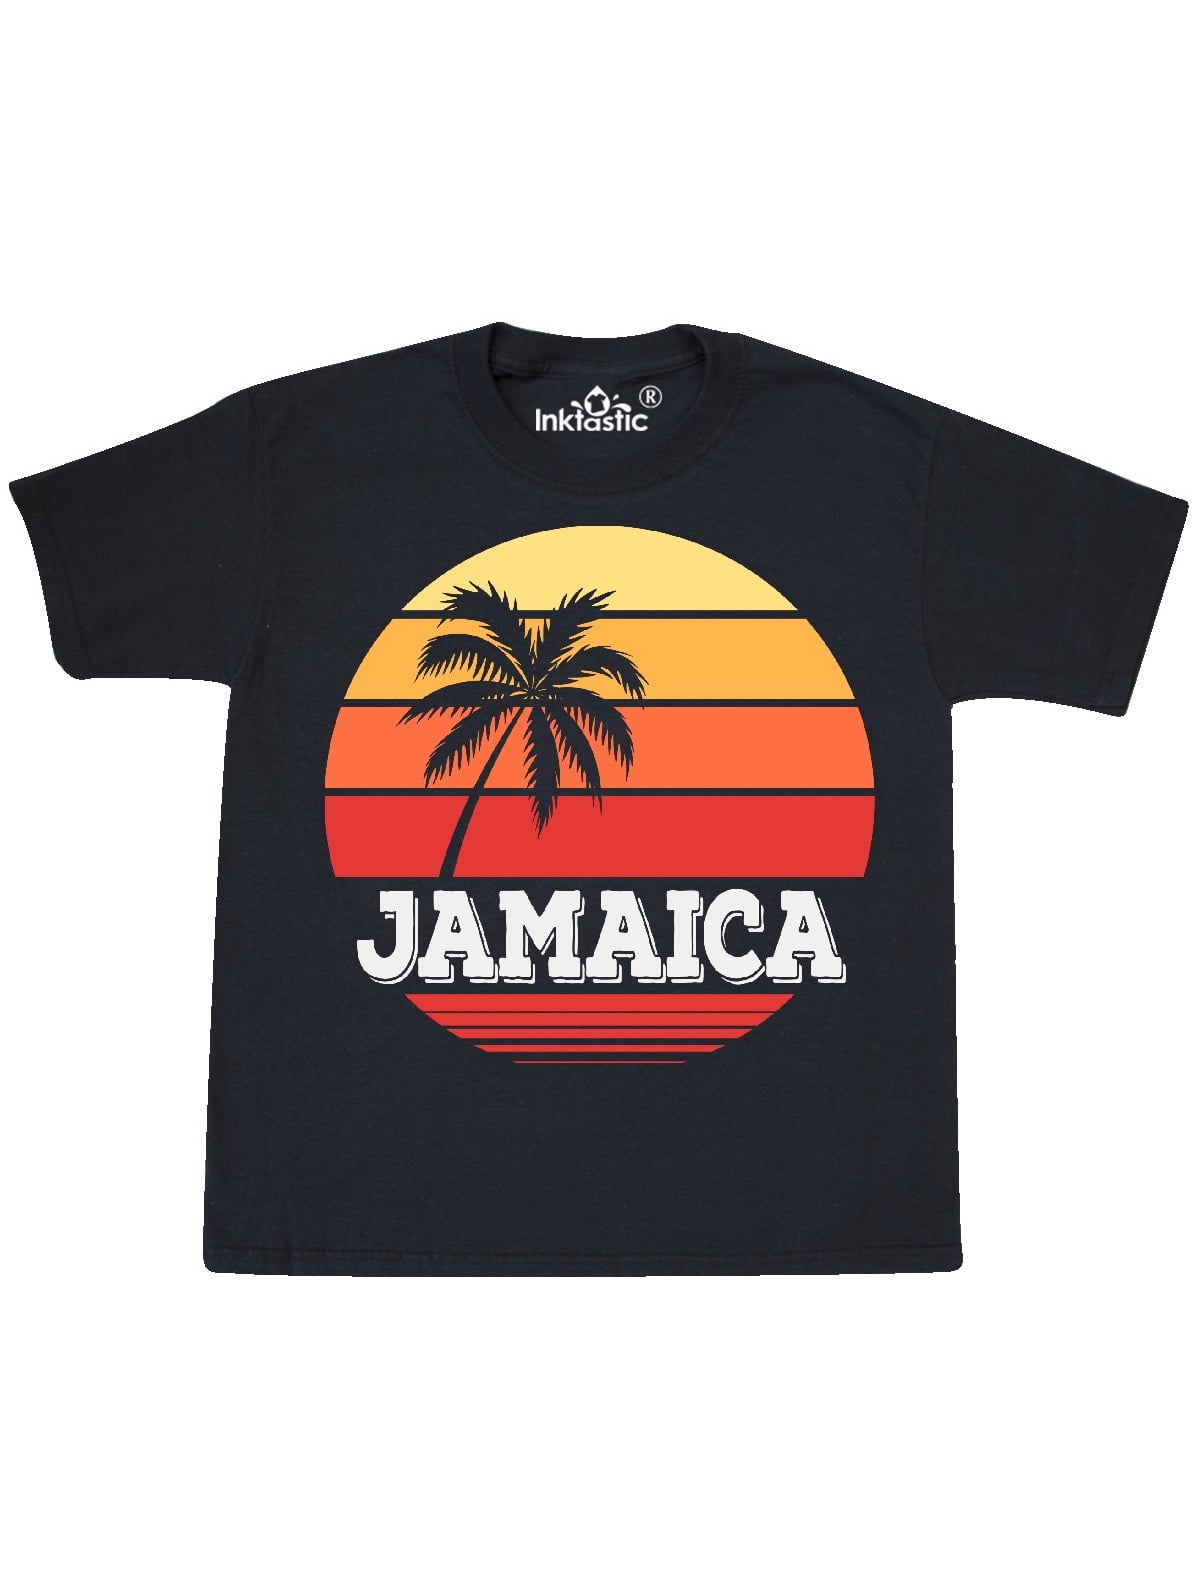 Jamaica Vacation Trip Youth T-Shirt - Walmart.com - Walmart.com